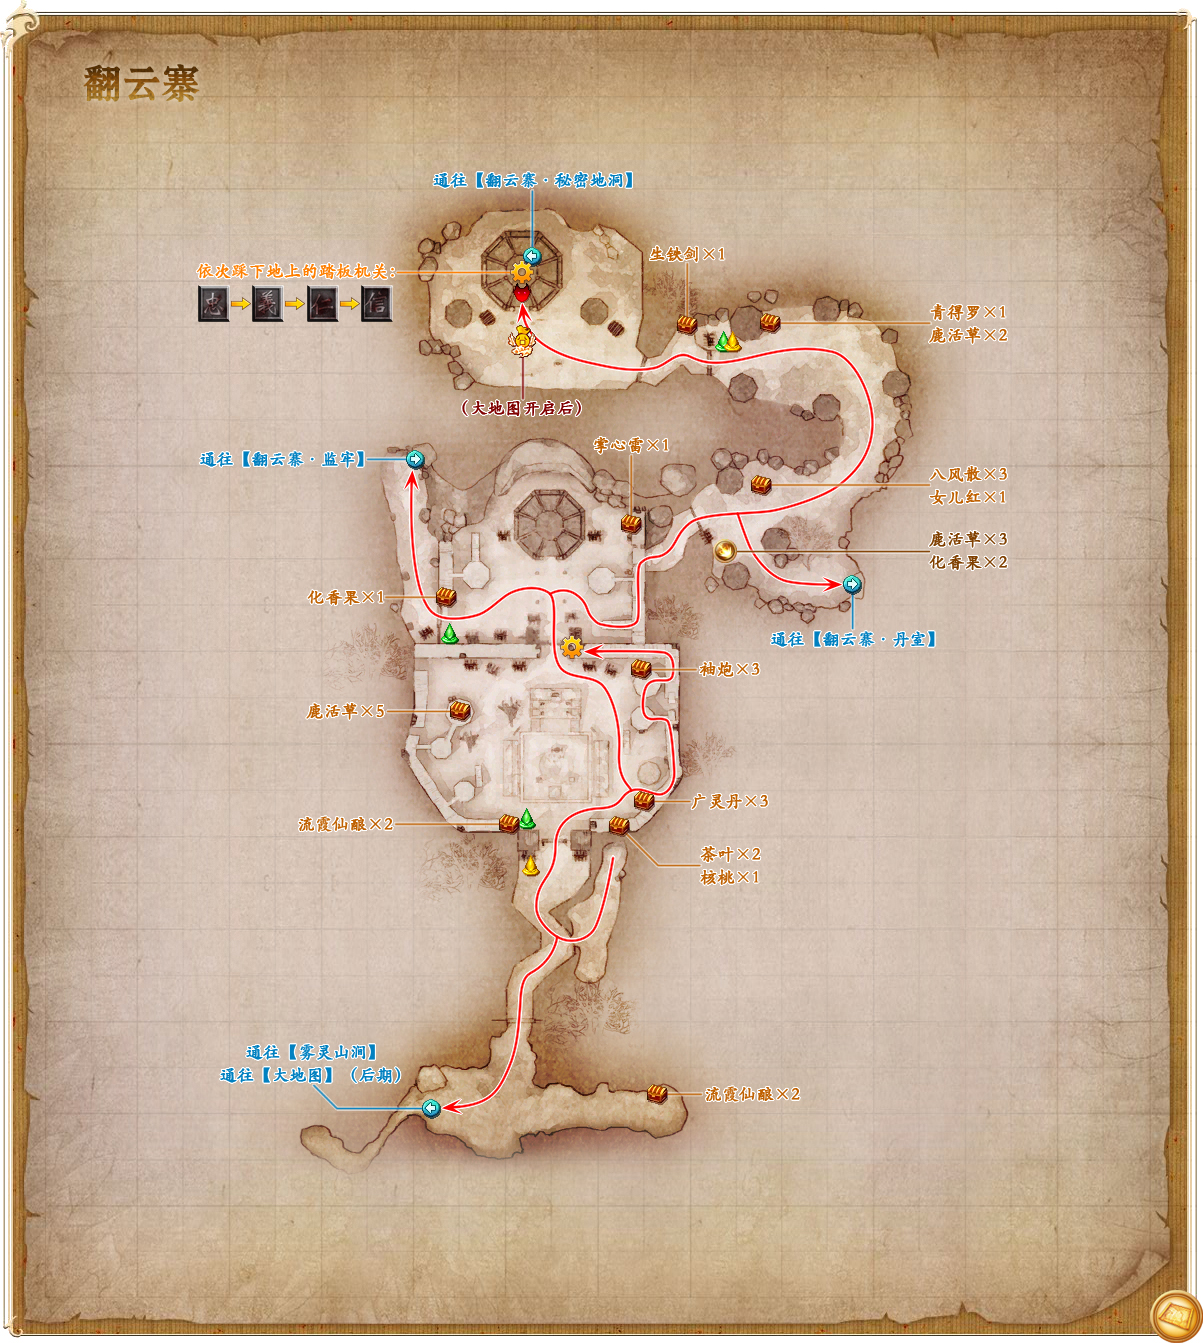 翻雲寨迷宮地圖